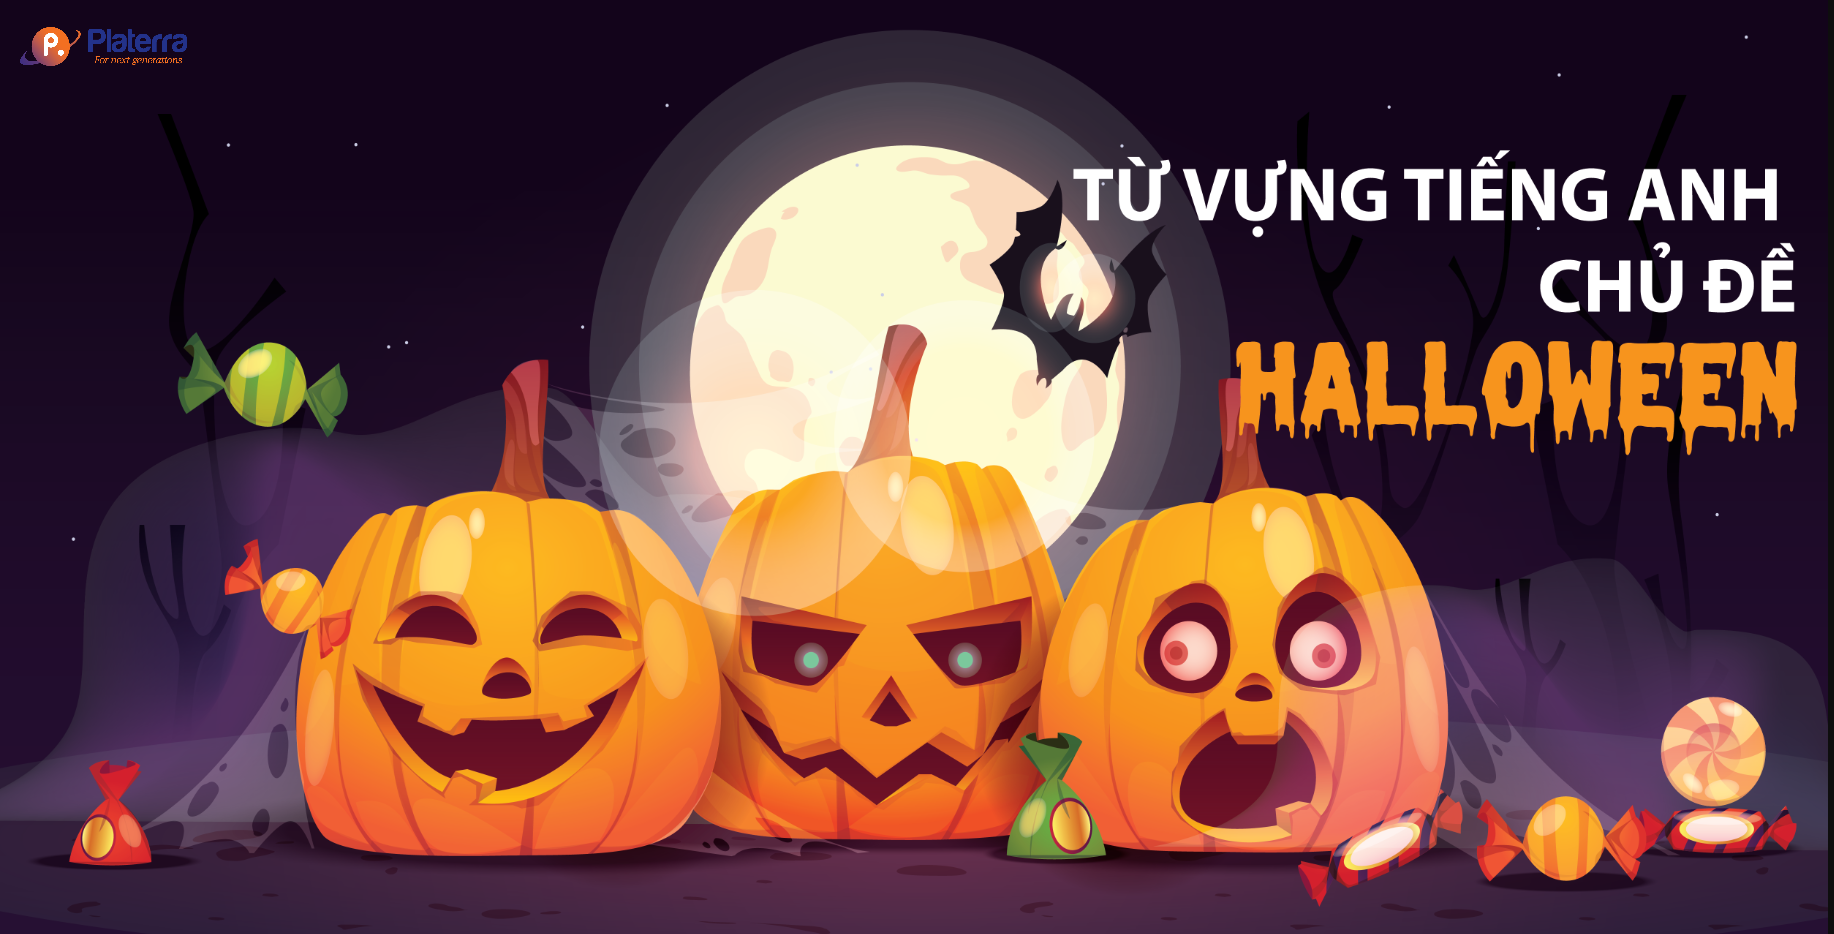 Halloween, viết tắt của All Hallows 'Evening; đây là một lễ hội truyền thống diễn ra vào ngày 31 tháng 10. 